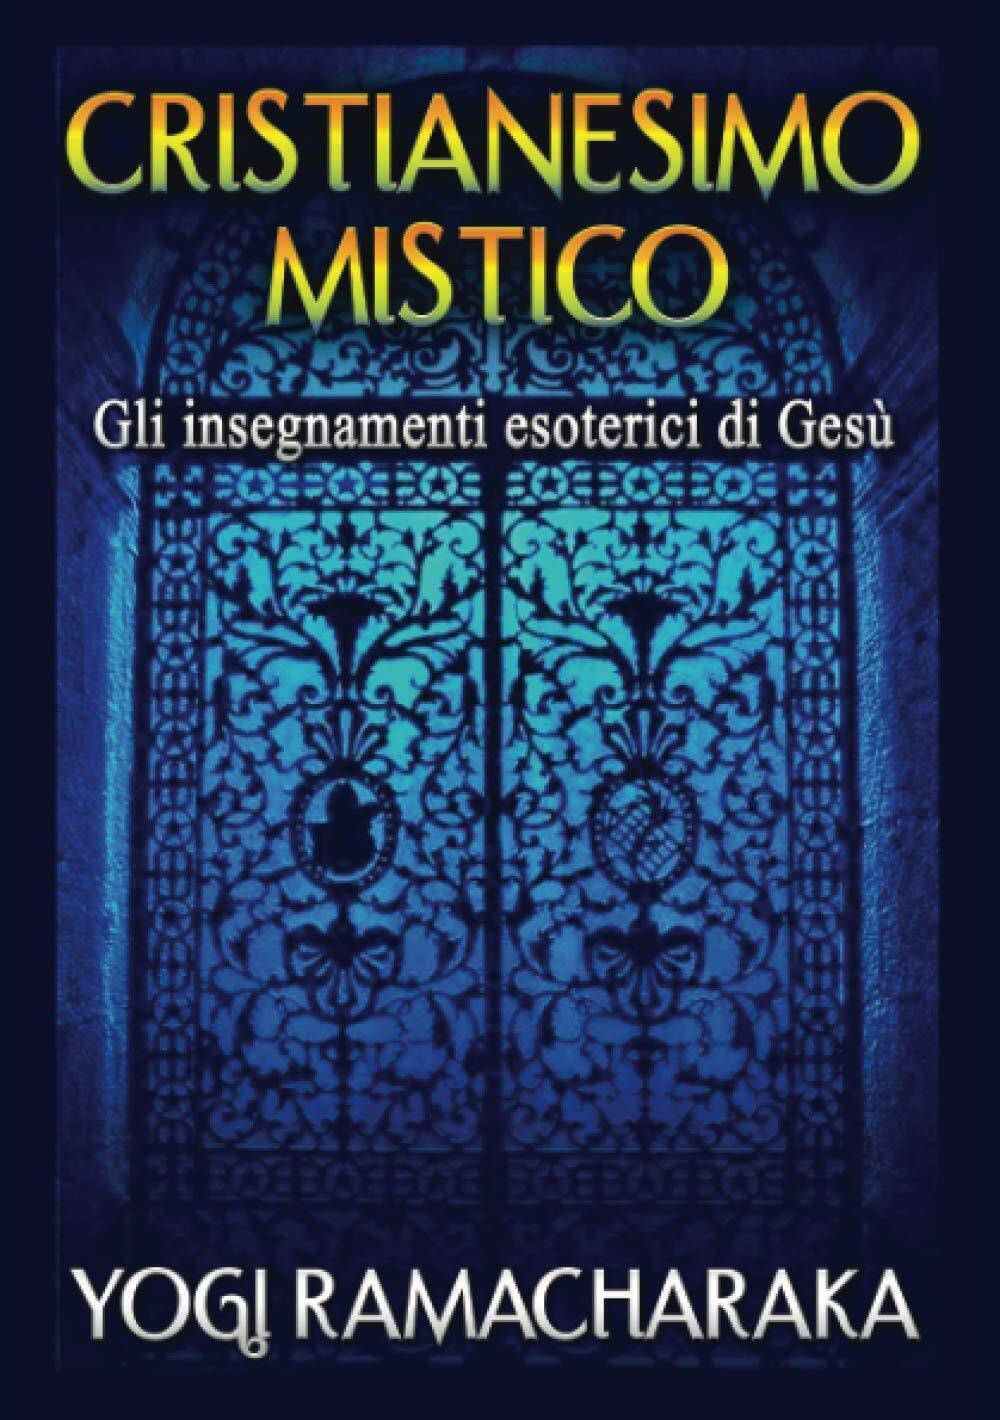 Cristianesimo Mistico: Gli insegnamenti esoterici di Ges? - Ramacharaka - 2020 libro usato